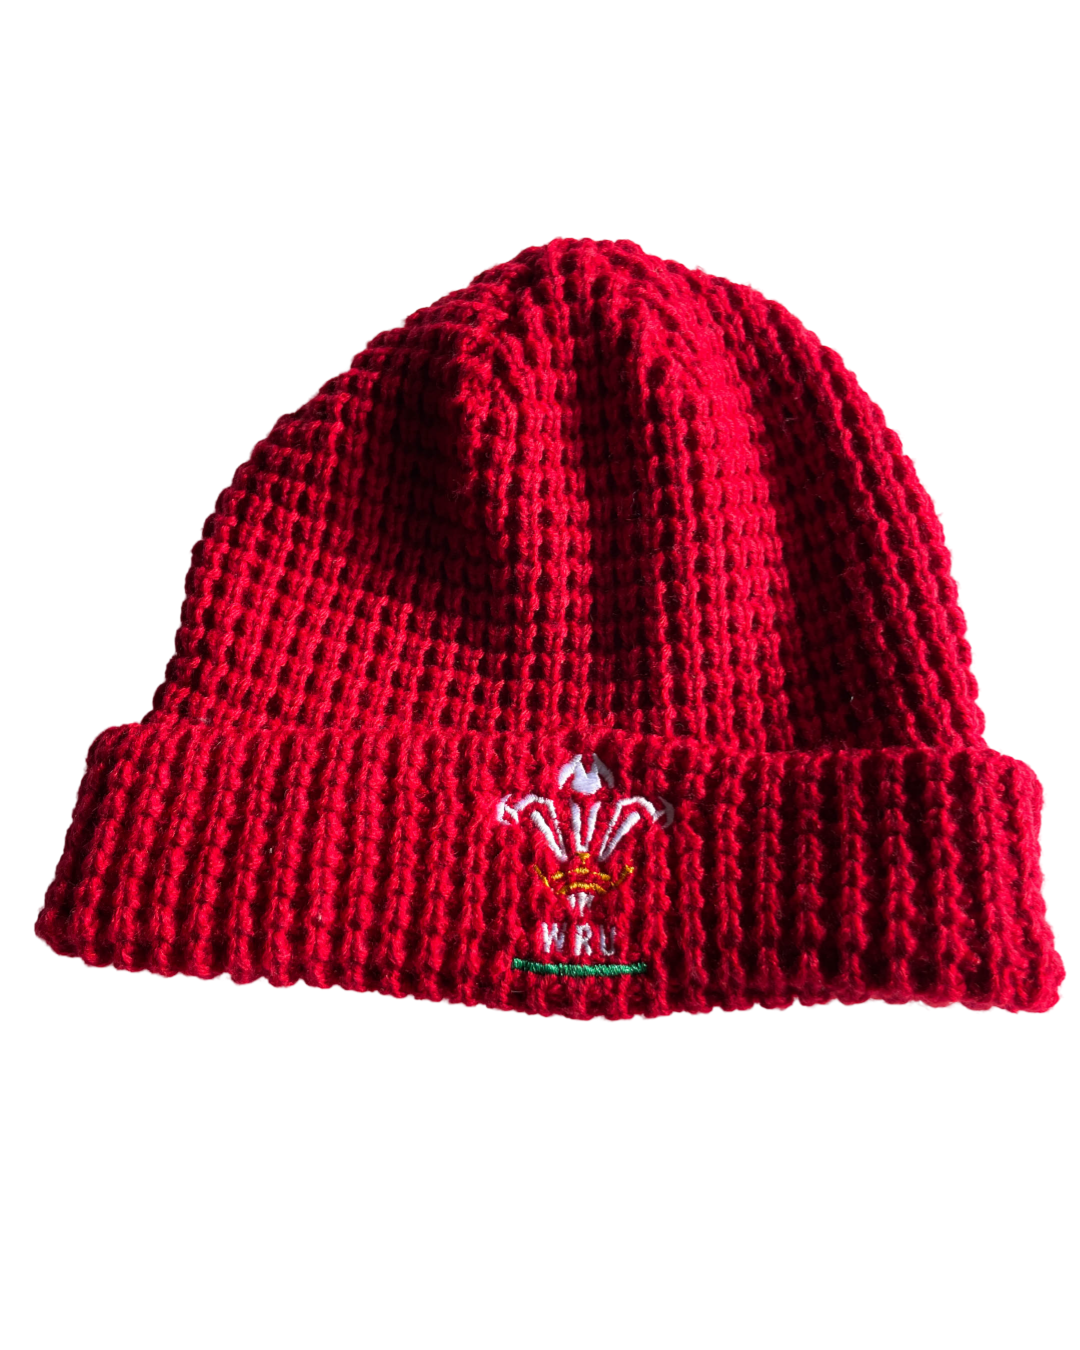 Vintage WRU Wales Welsh Rugby Winter Hat red Beanie - SKU 5072